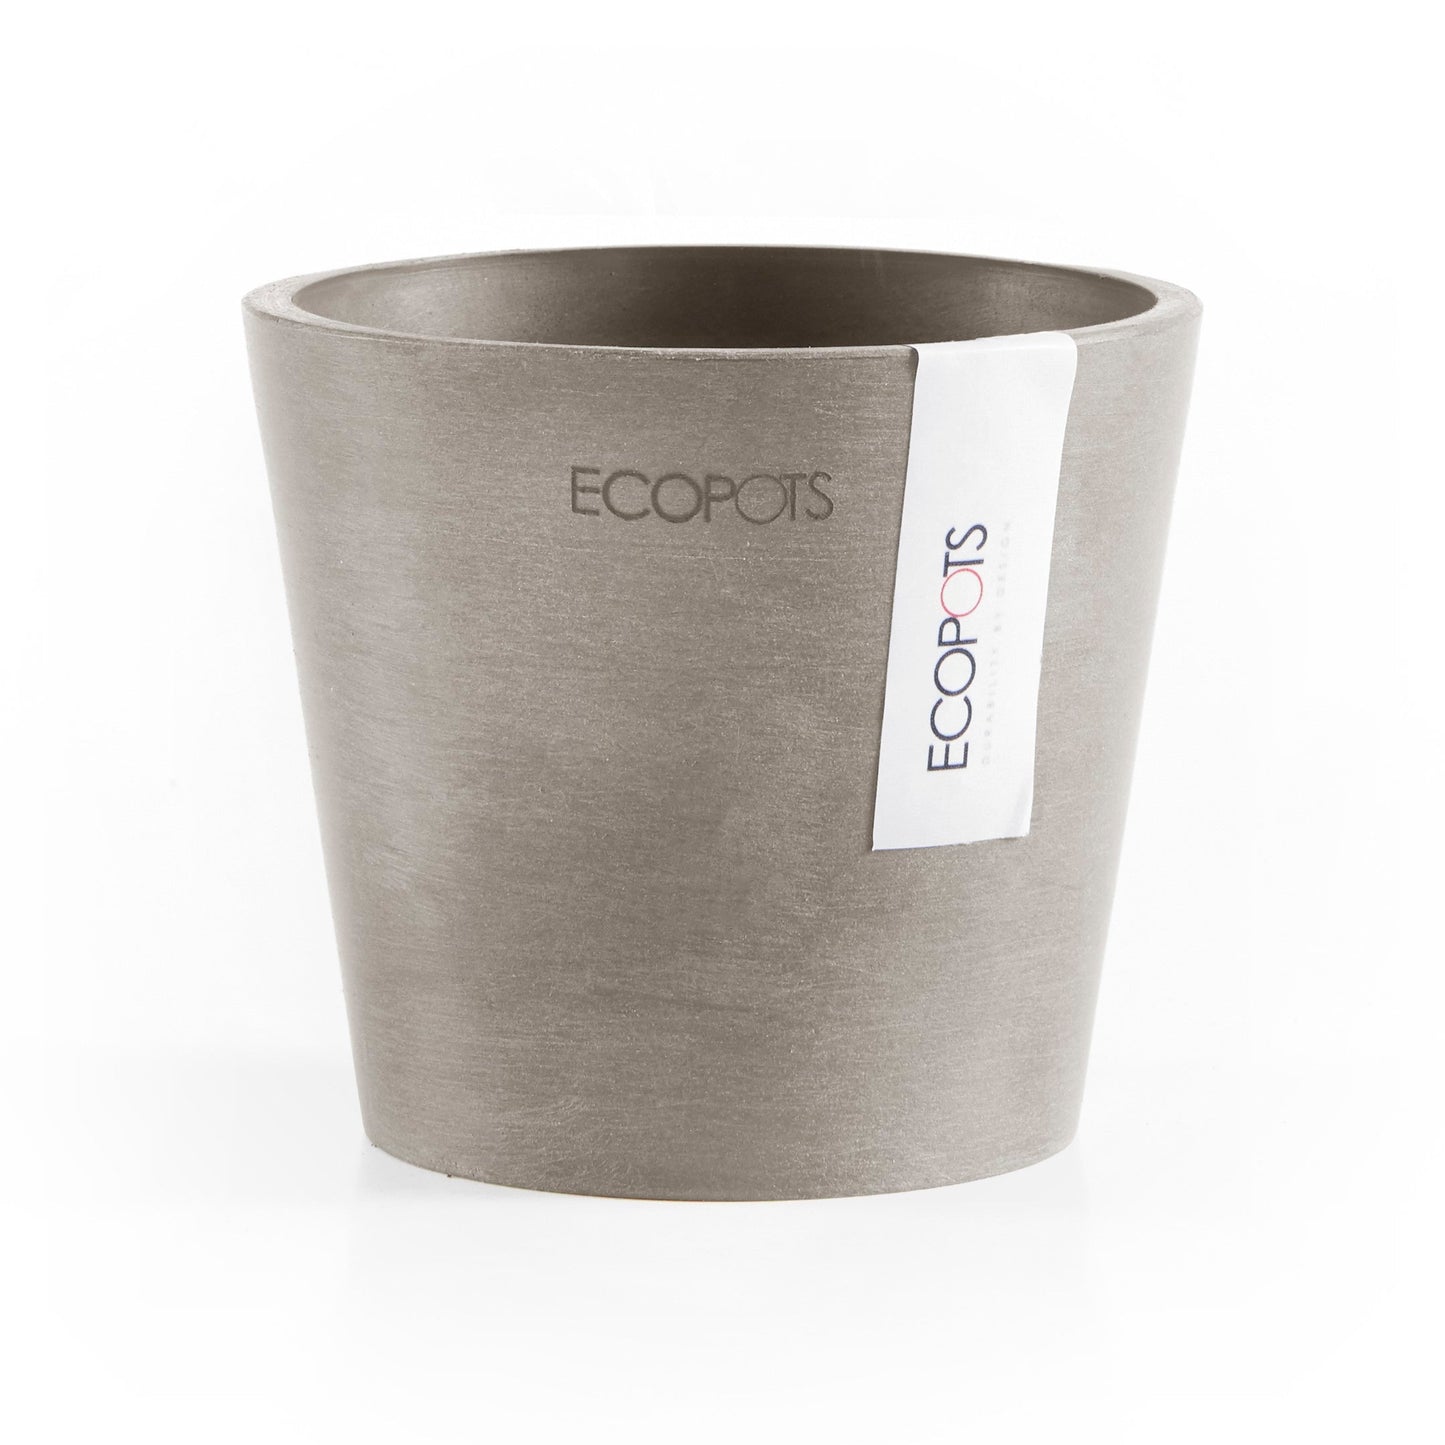 Kukkaruukku - Ecopots - Amsterdam 10,5cm taupe - Ecopotskauppa - Uuden aikakauden kukkaruukku